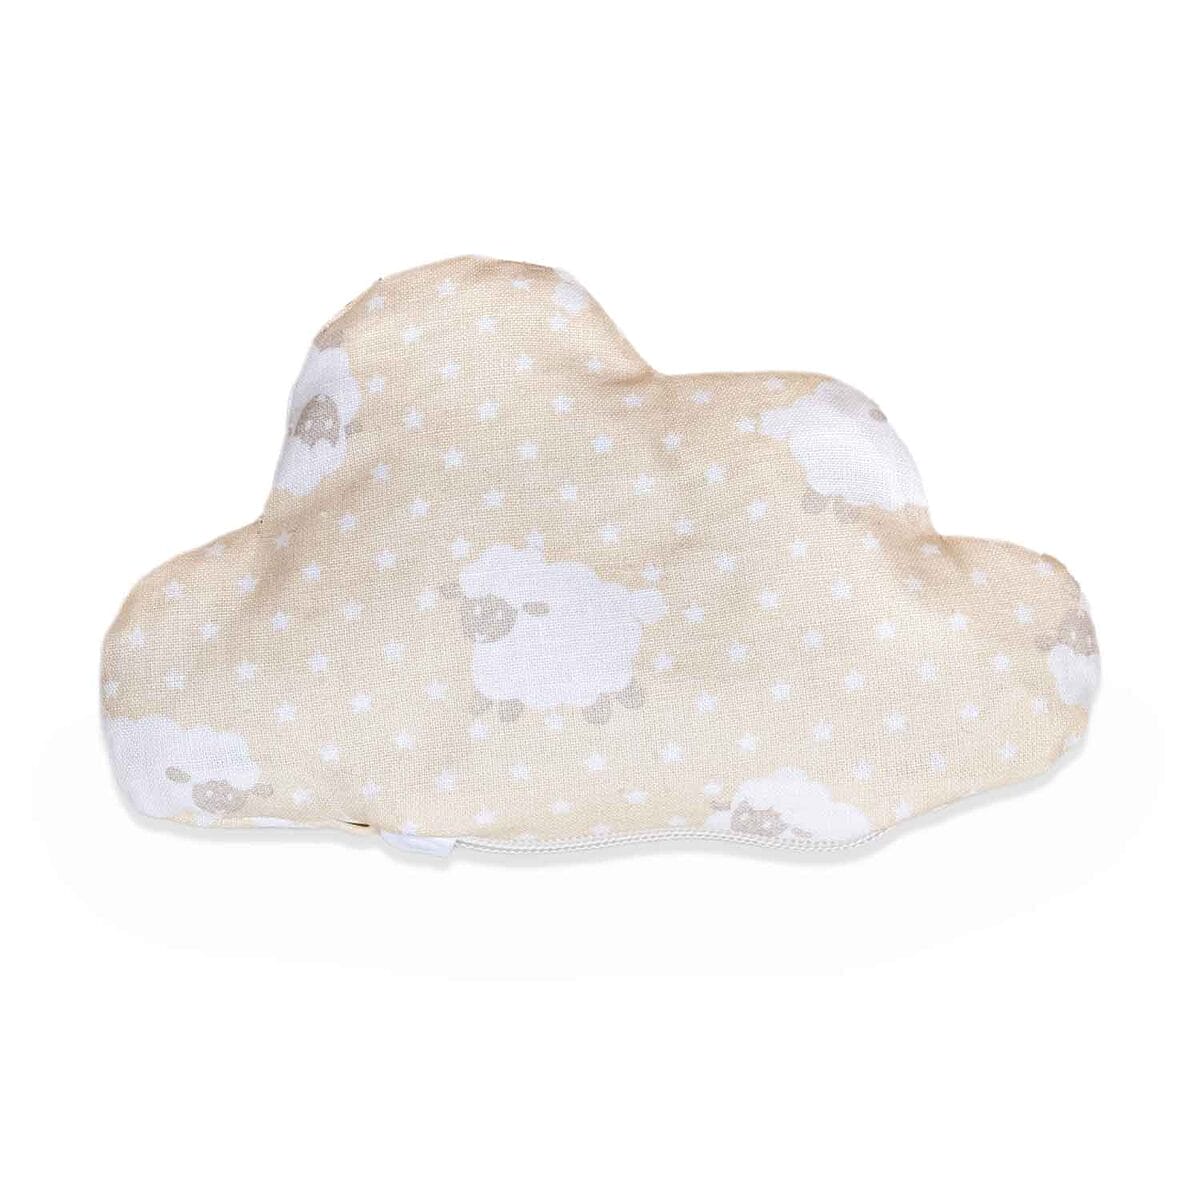 Sanftes Wärmekissen in Wolkenform mit entzückendem Schafsmuster auf einem Bio-Baumwollbezug, gefüllt mit natürlichen Dinkelspelz und Heilkräutern für Babys Wohlbefinden.